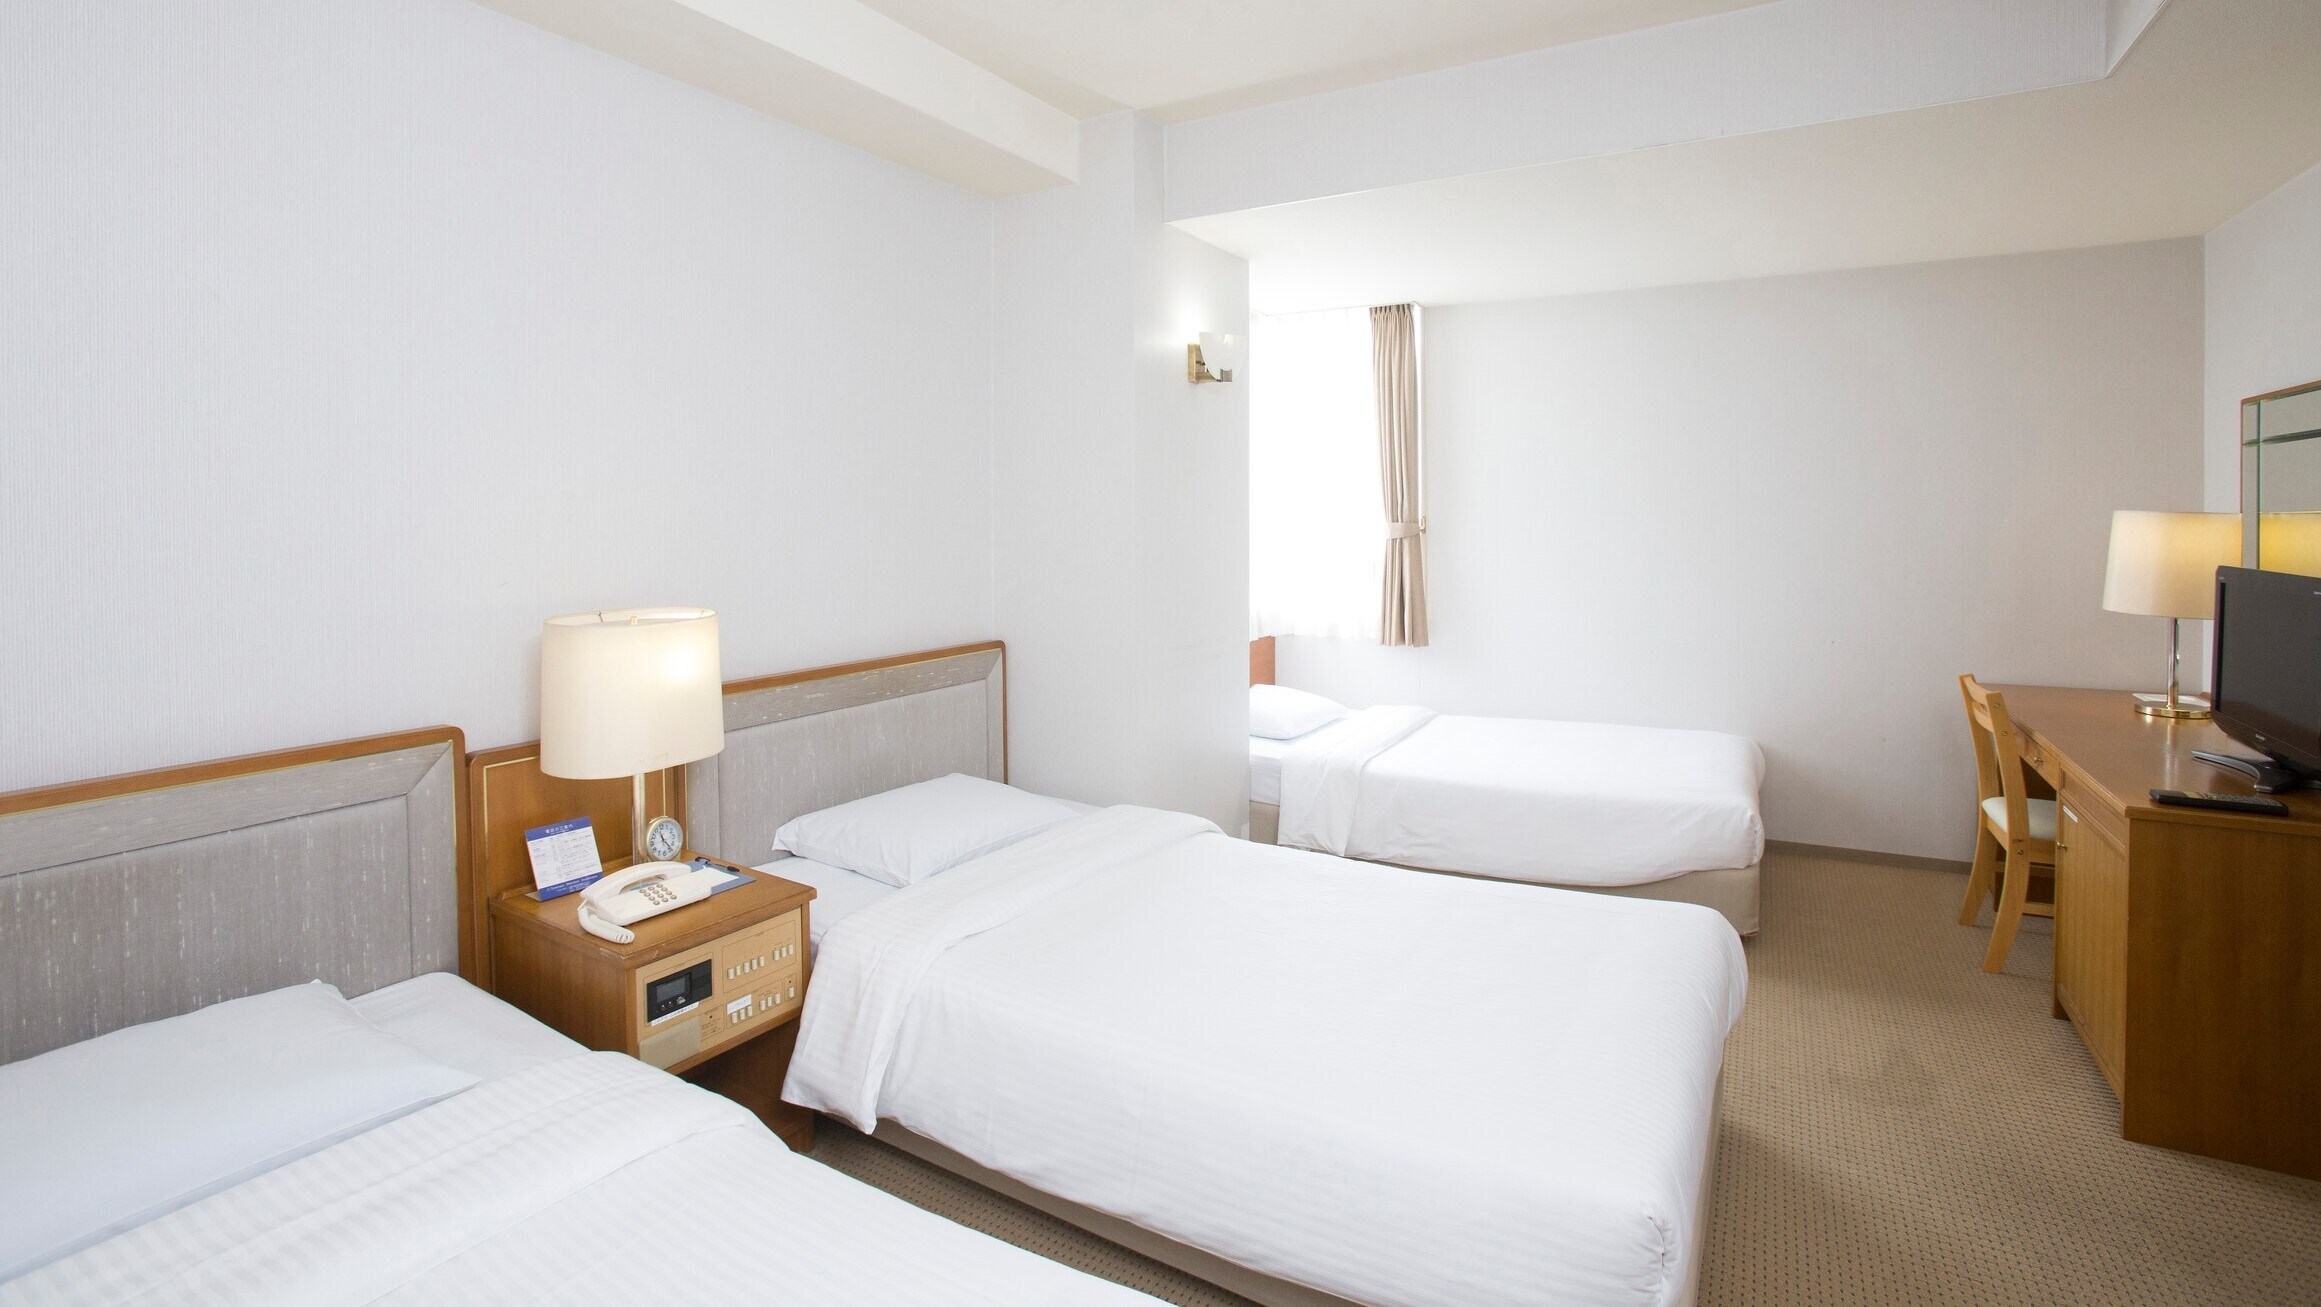 [Triple room] 2 to 3 people, 23 square meters, bed width 110